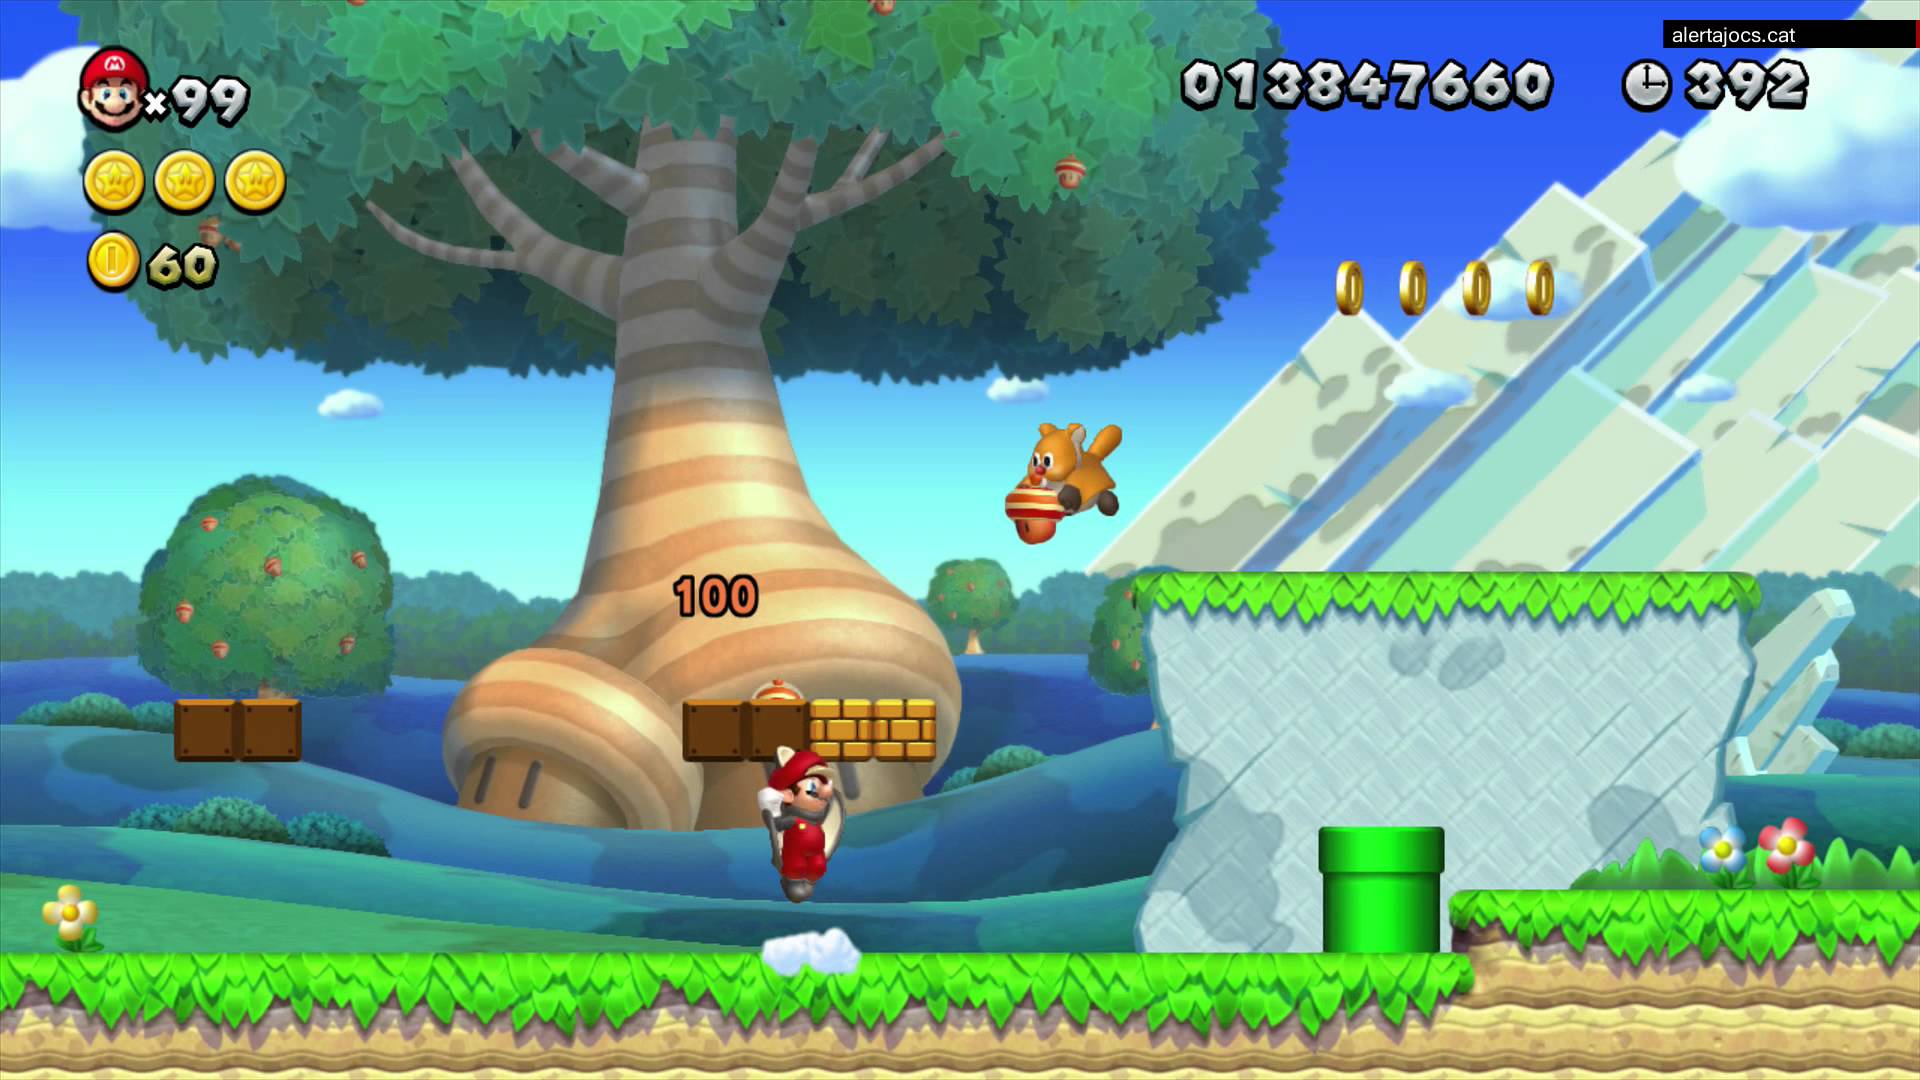 New Super Mario Bros. U gameplay (Wii U, 2012) per alertajocs.cat de alertajocs